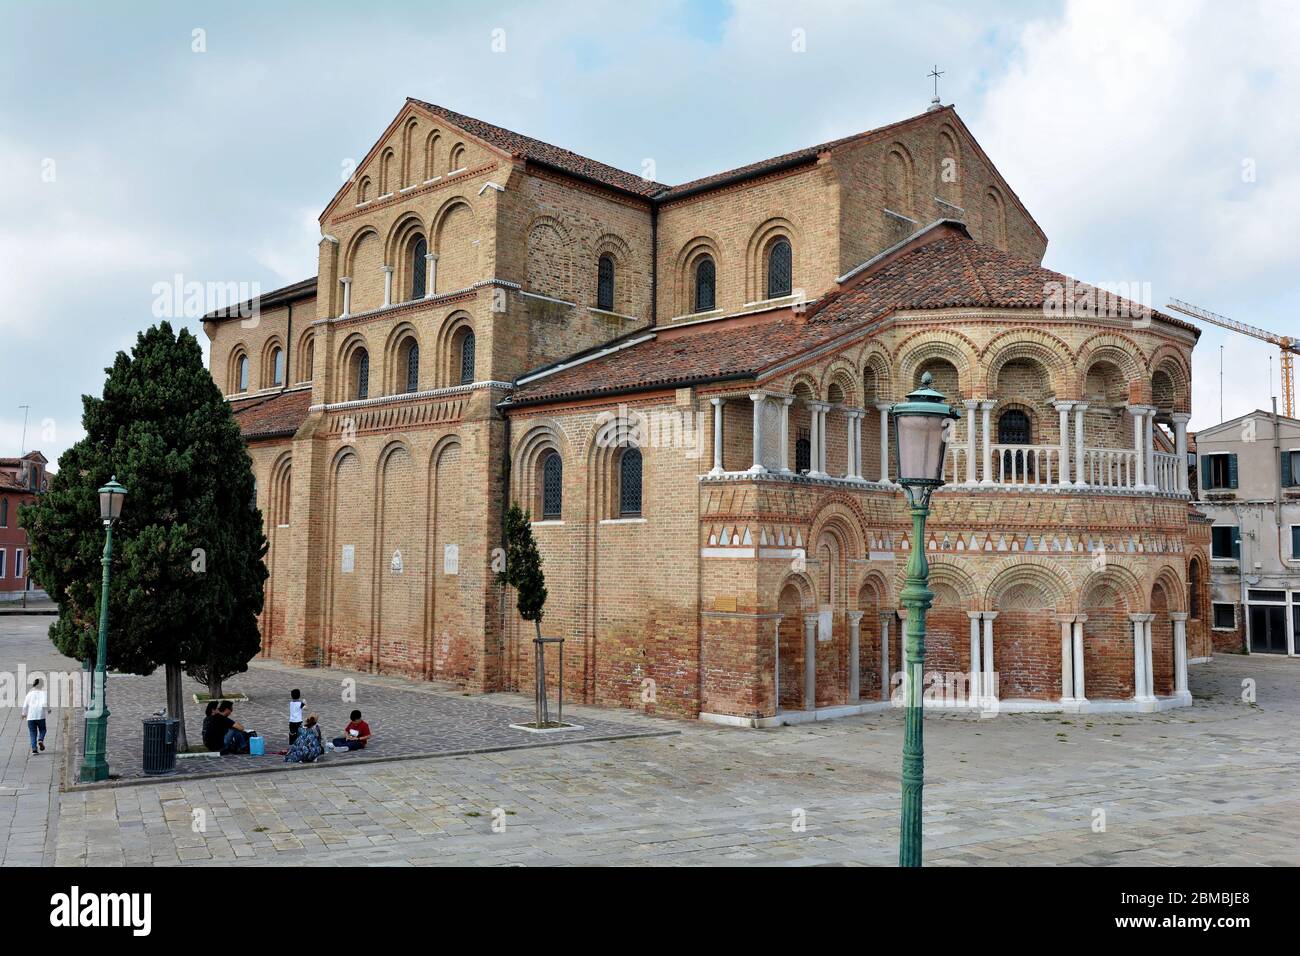 Church of Santa Maria e San Donato, Murano, Italy Stock Photo